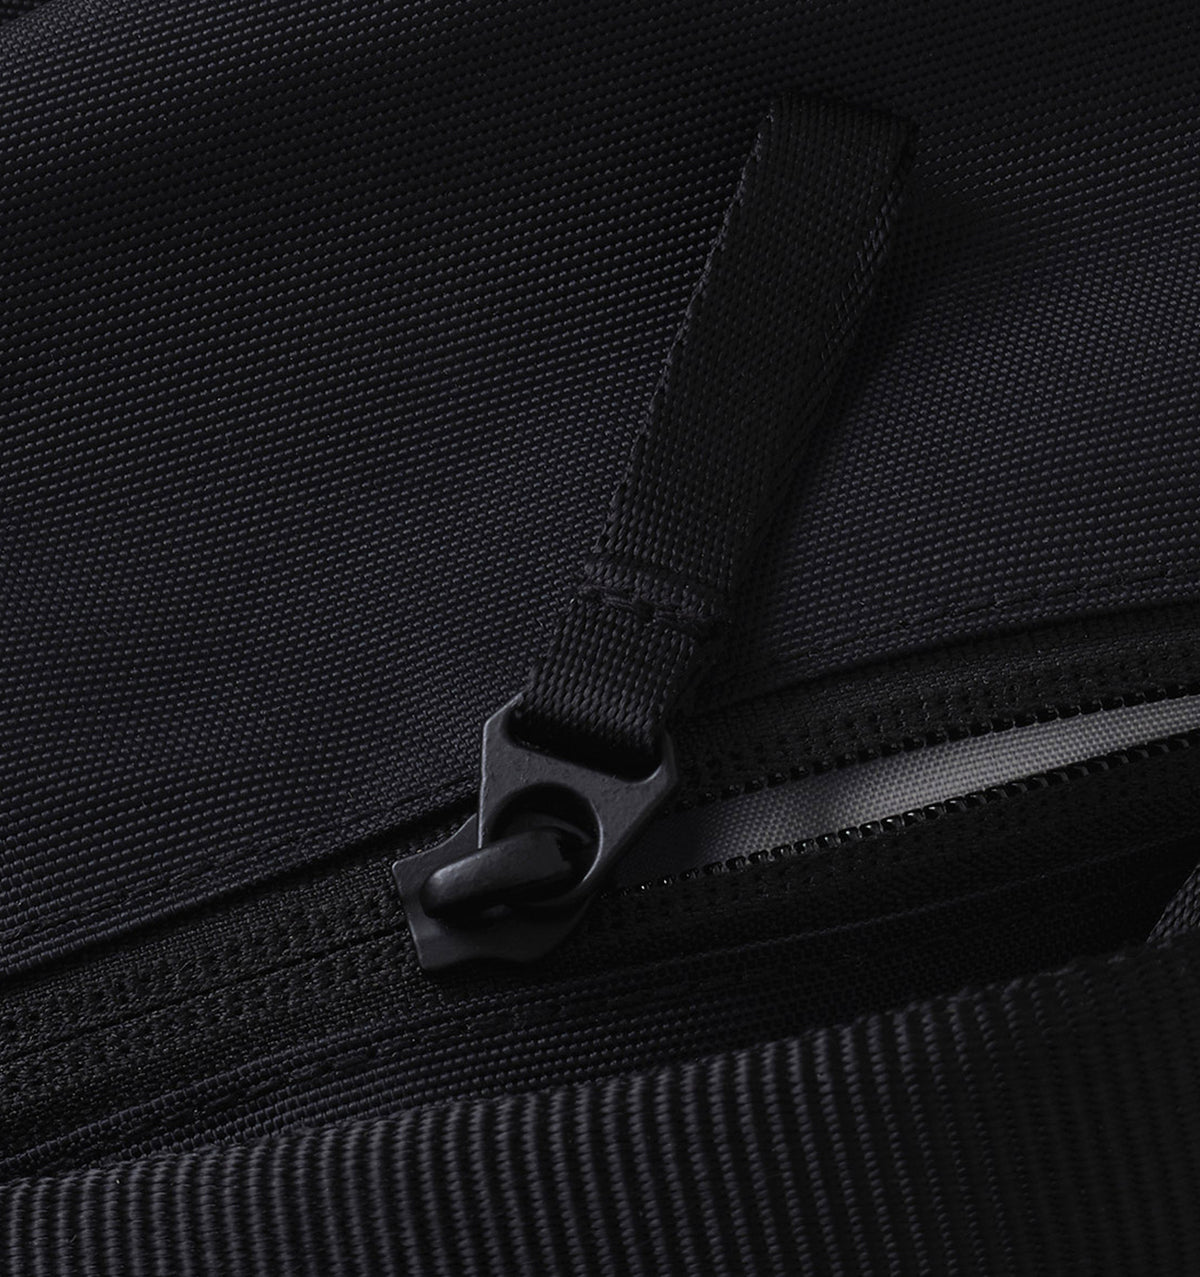 Urth Arkose Backpack 15" 20L - Black